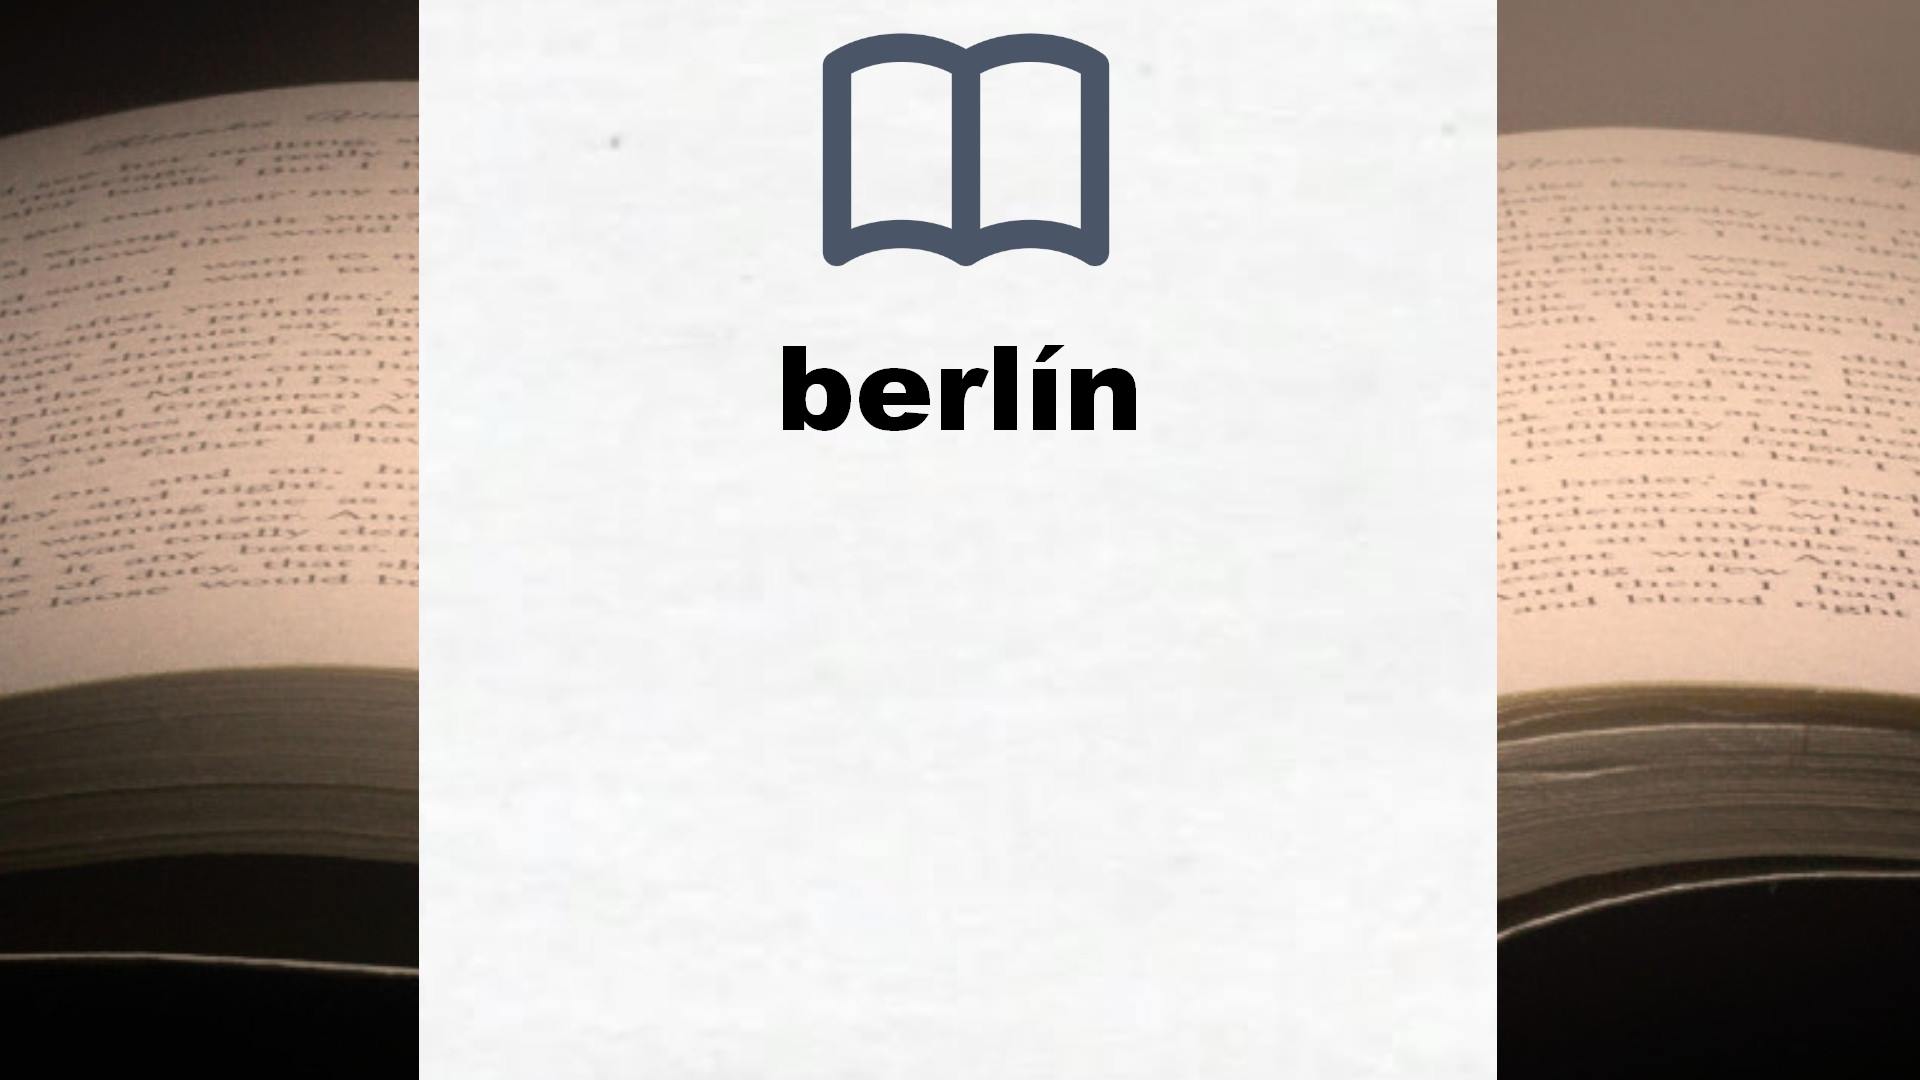 Libros sobre berlín